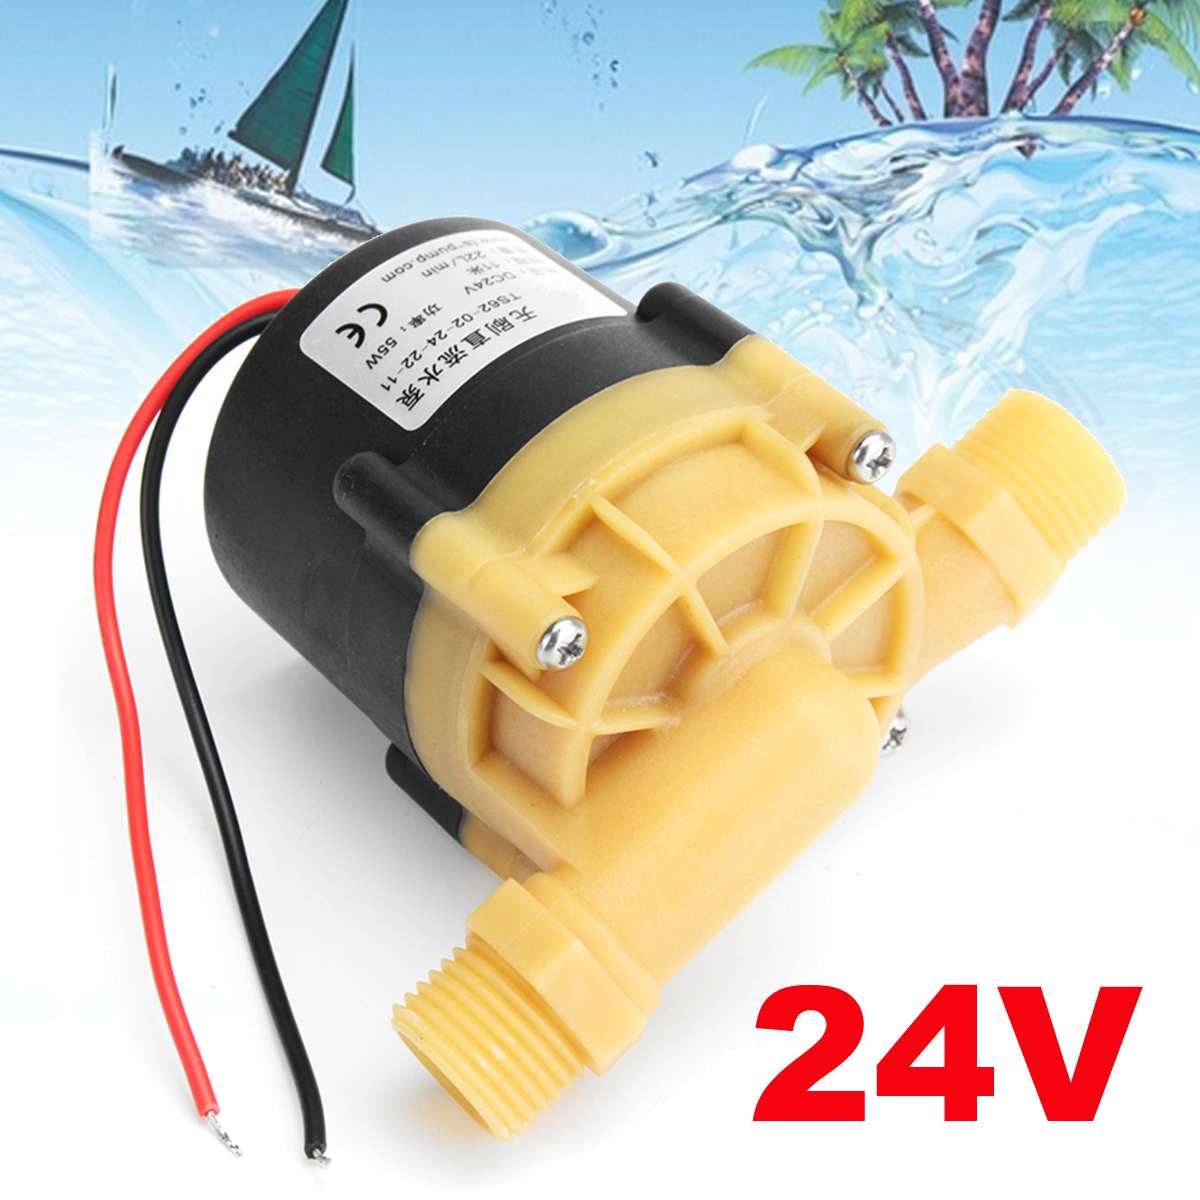 55W 24V 22L/Min Borstelloze Waterpomp Mini Booster Pomp 1.5A 11M Voor Chiller Machine En led Licht Pomp